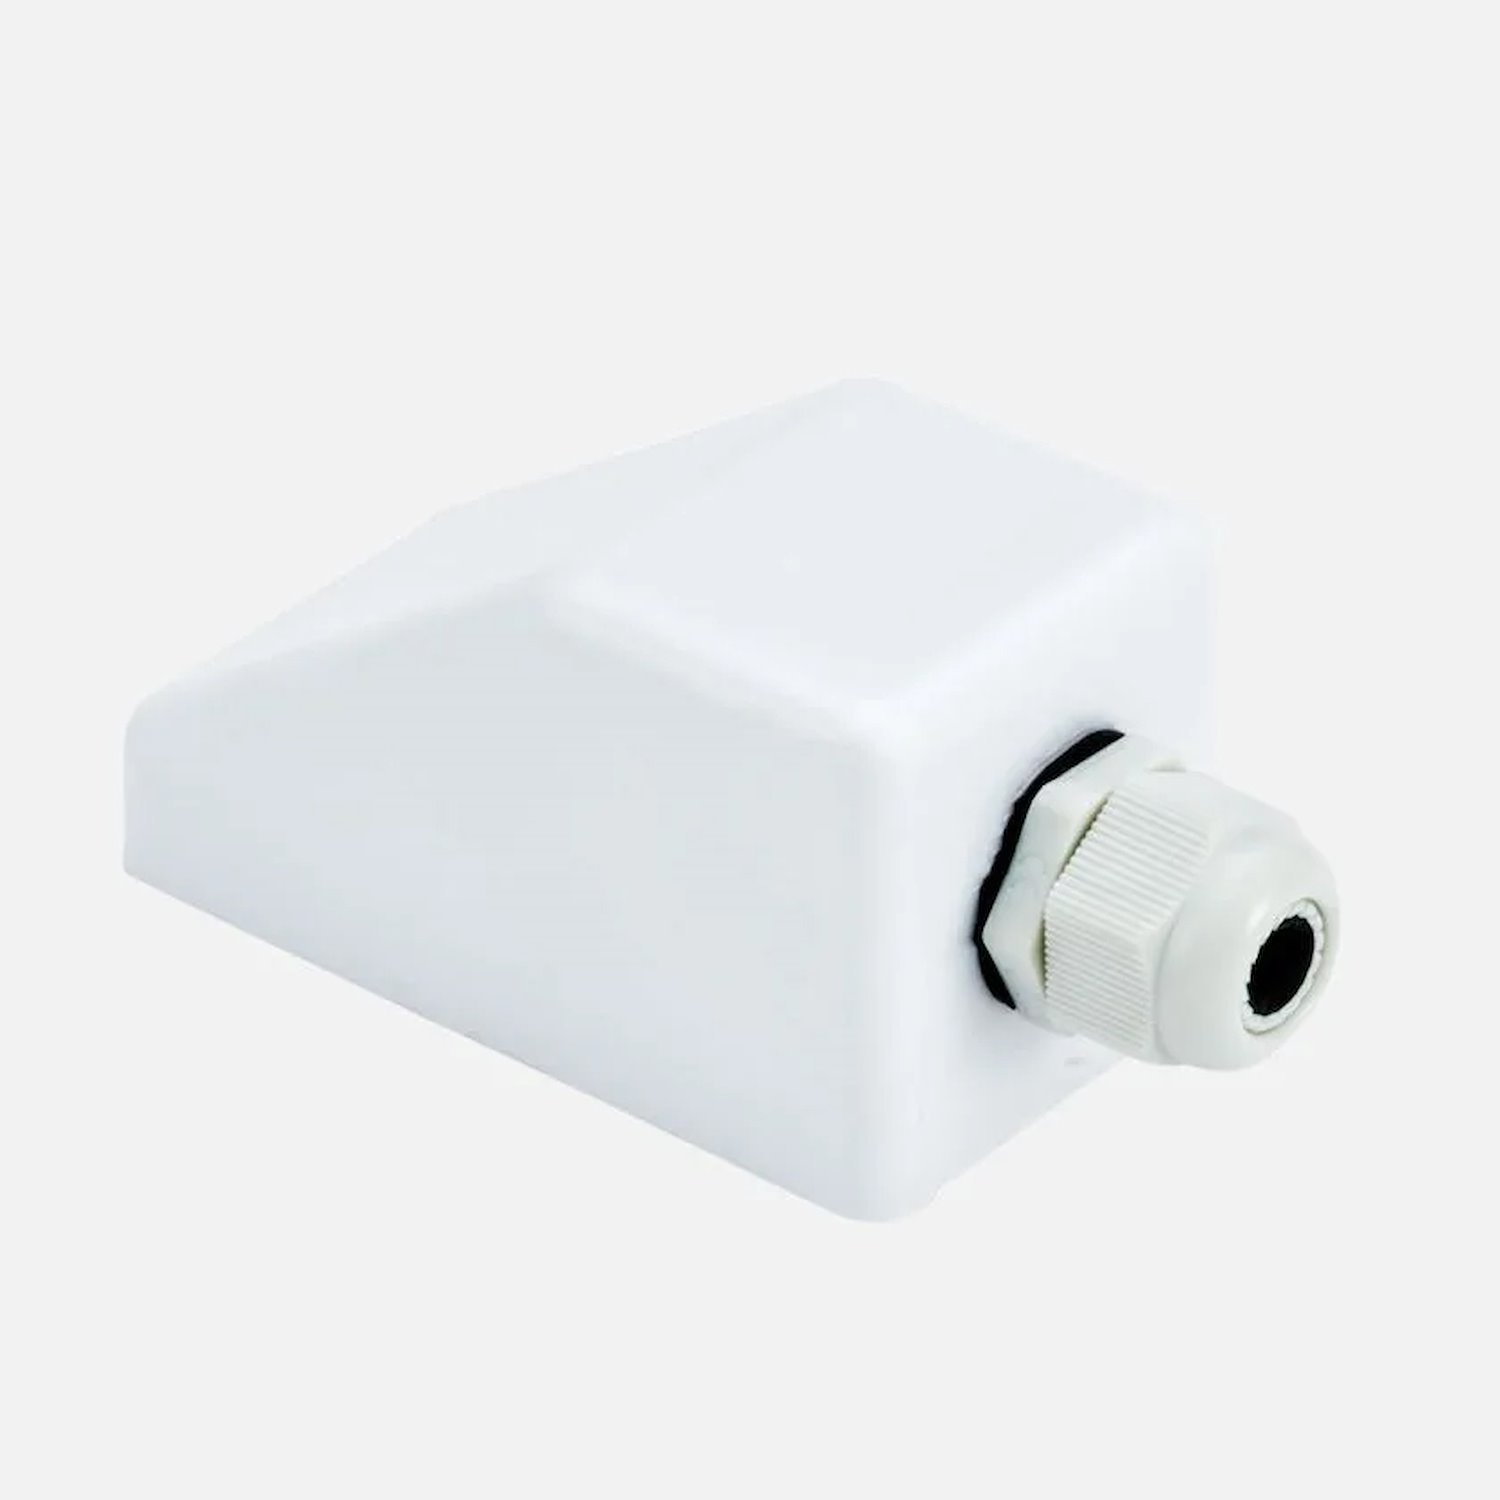 SMC0001 Single Cable Gland [White}